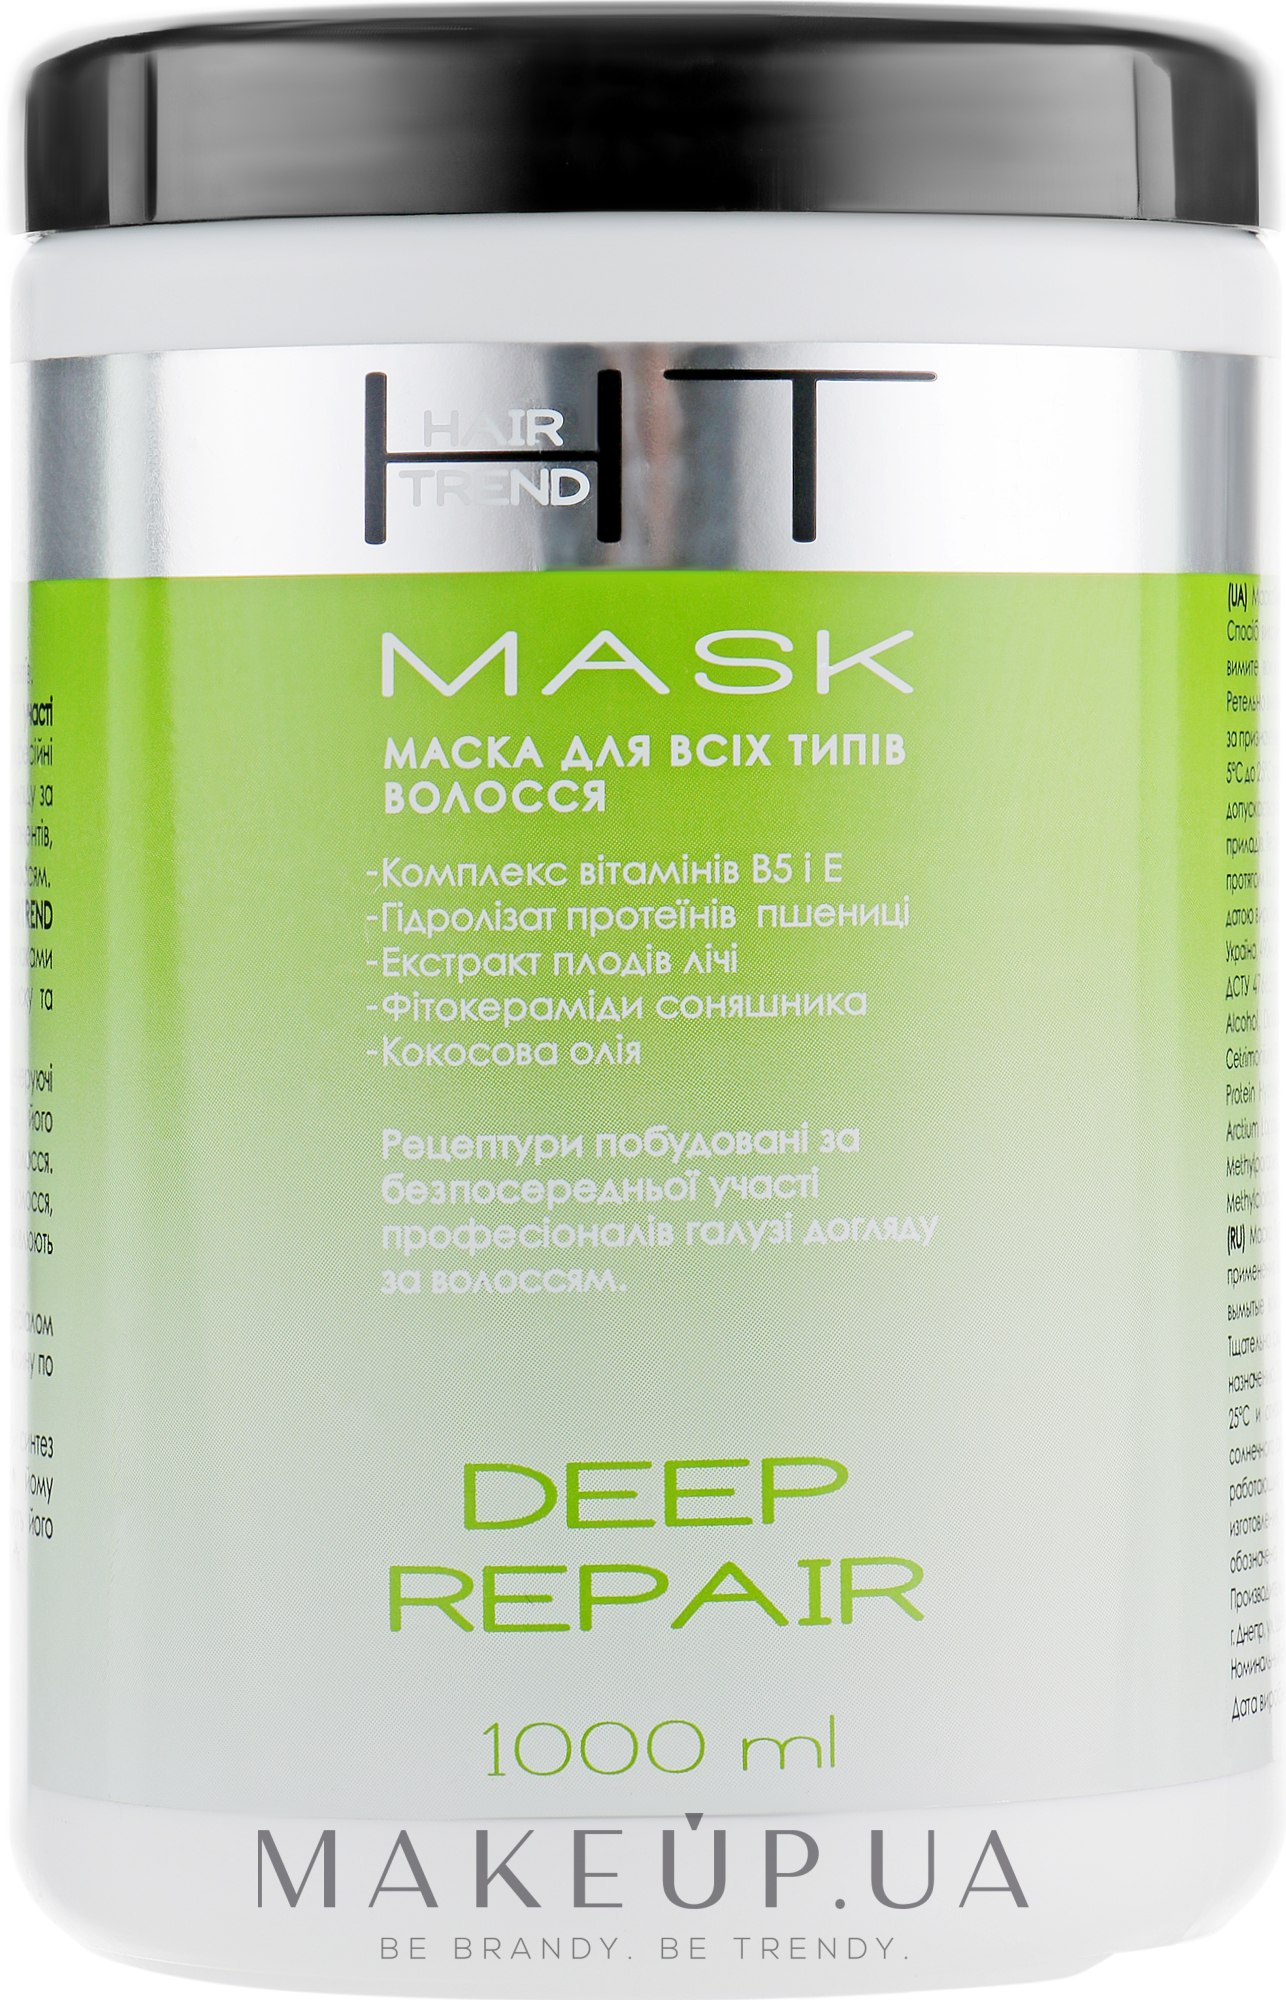 Маска для всех типов волос "Глубокое восстановление" - Hair Trend Deep Repair Mask — фото 1000ml